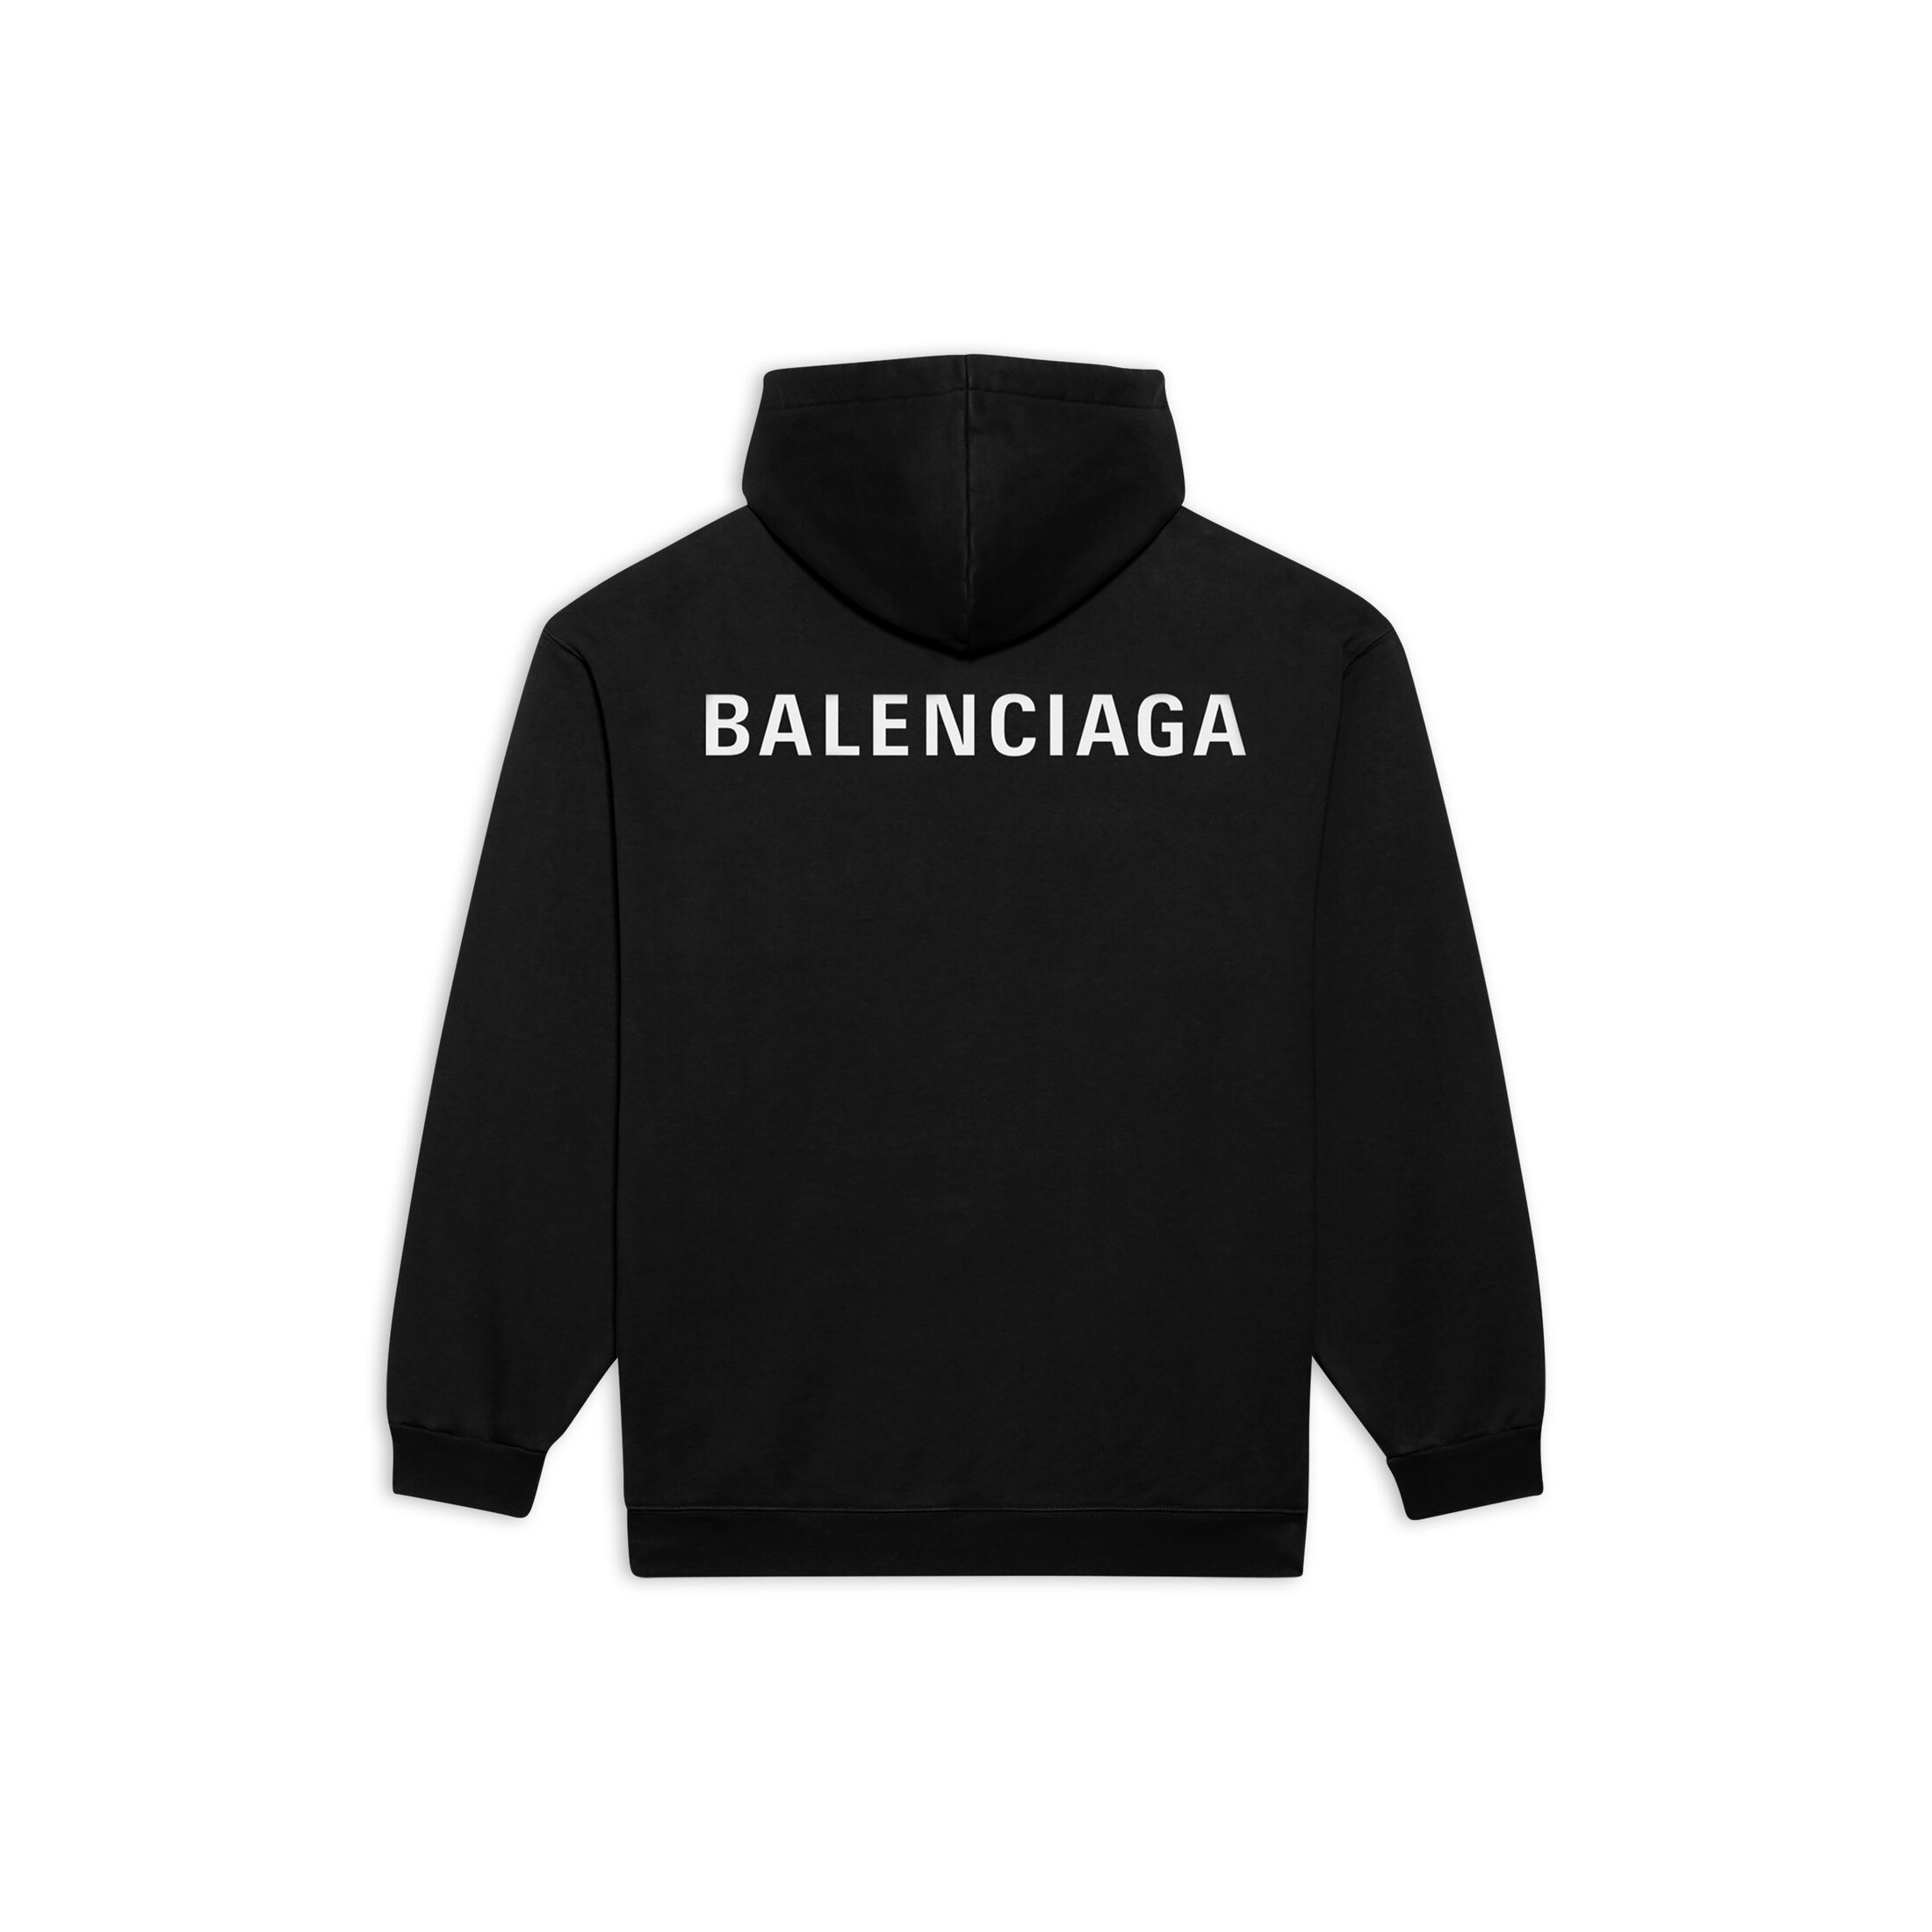 生まれのブランドで-Balenciaga - BALENCIAGA フーディー ラー